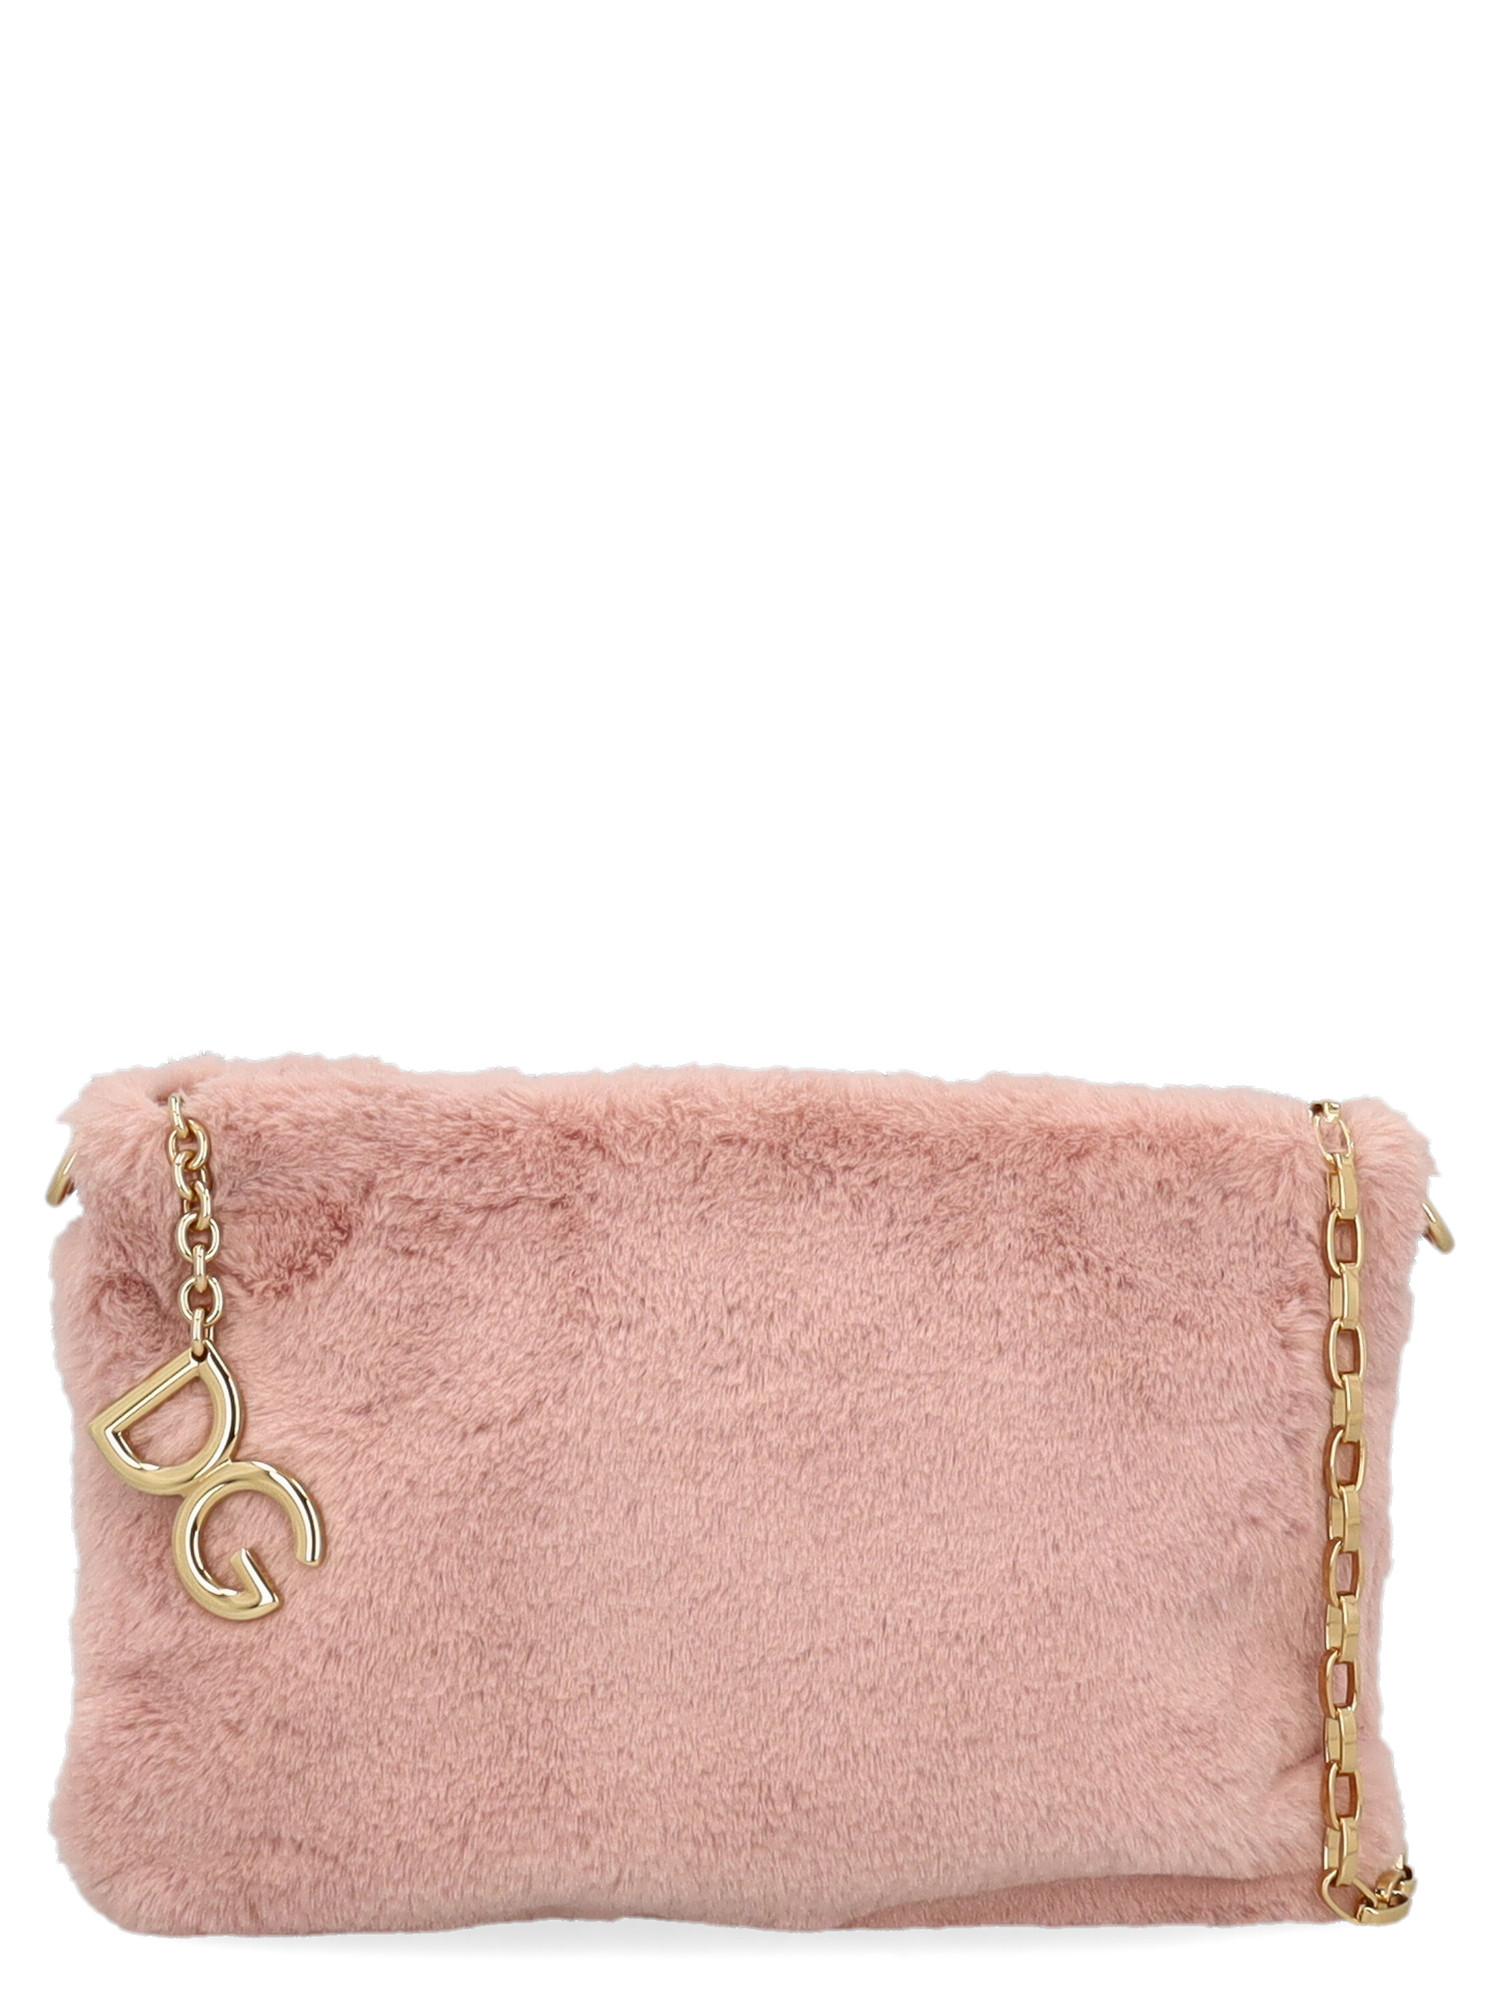 Sacs À Main Pour Femme - Dolce & Gabbana - En Leather Pink - Taille:  -